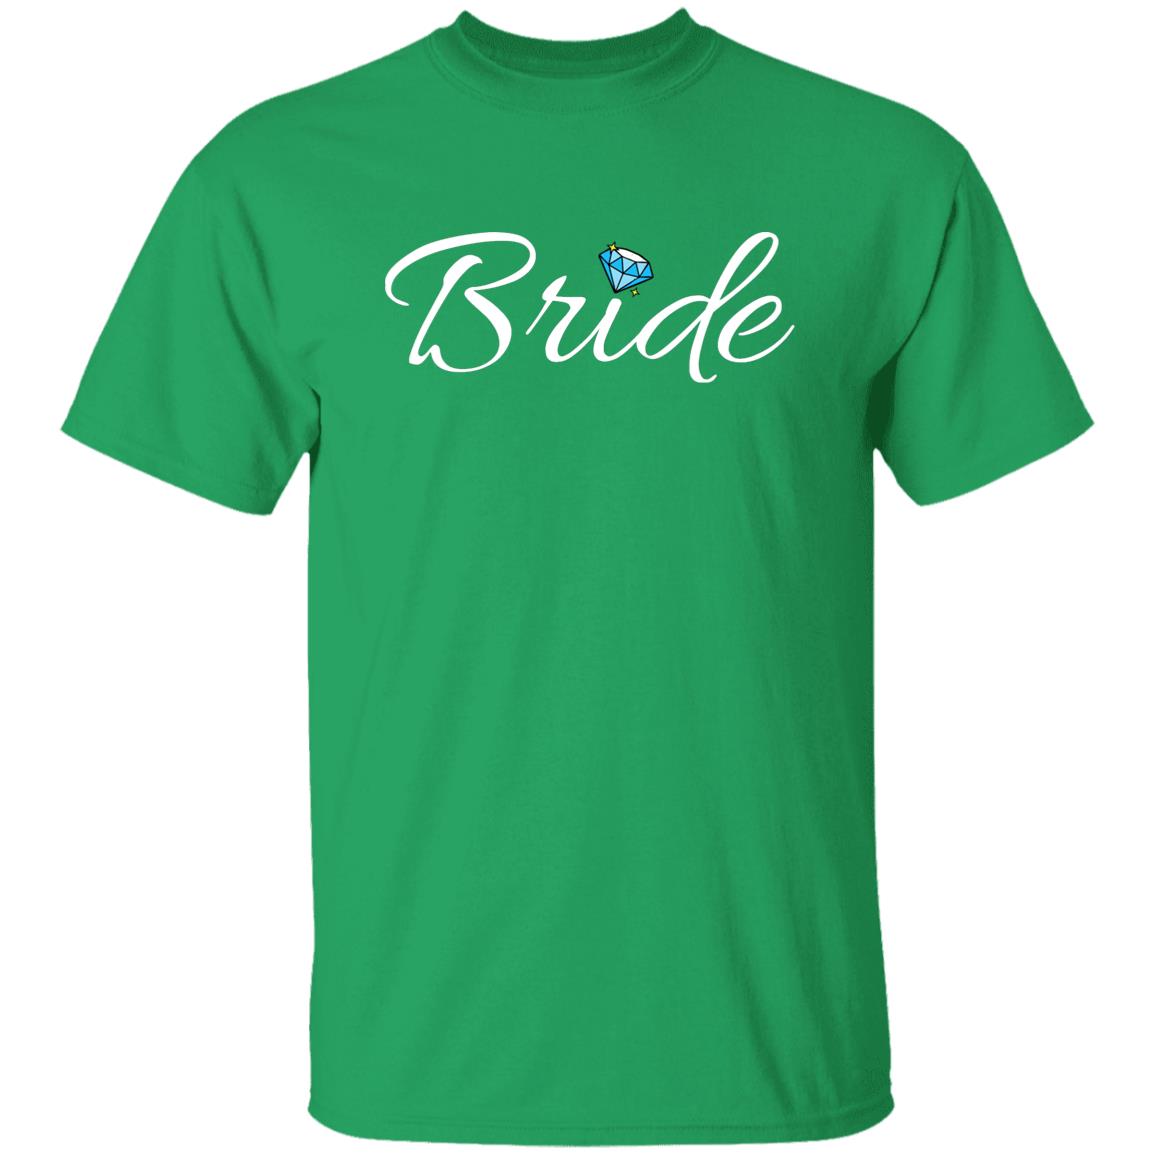 Bride (White Print) G500 5.3 oz. T-Shirt